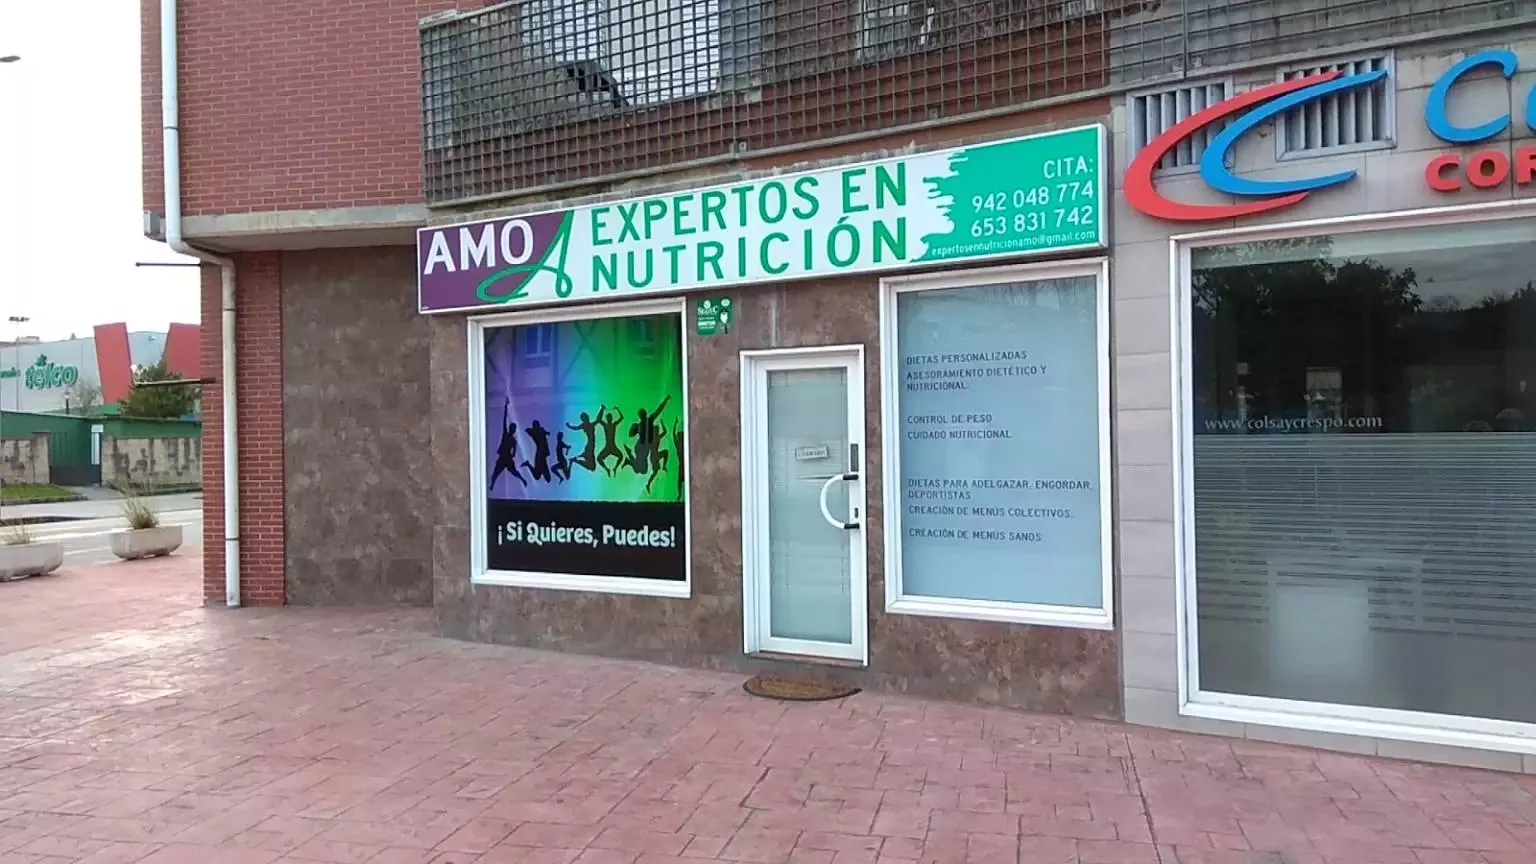 EXPERTOS EN NUTRICION AMO Nutricionistas Dietistas Santander